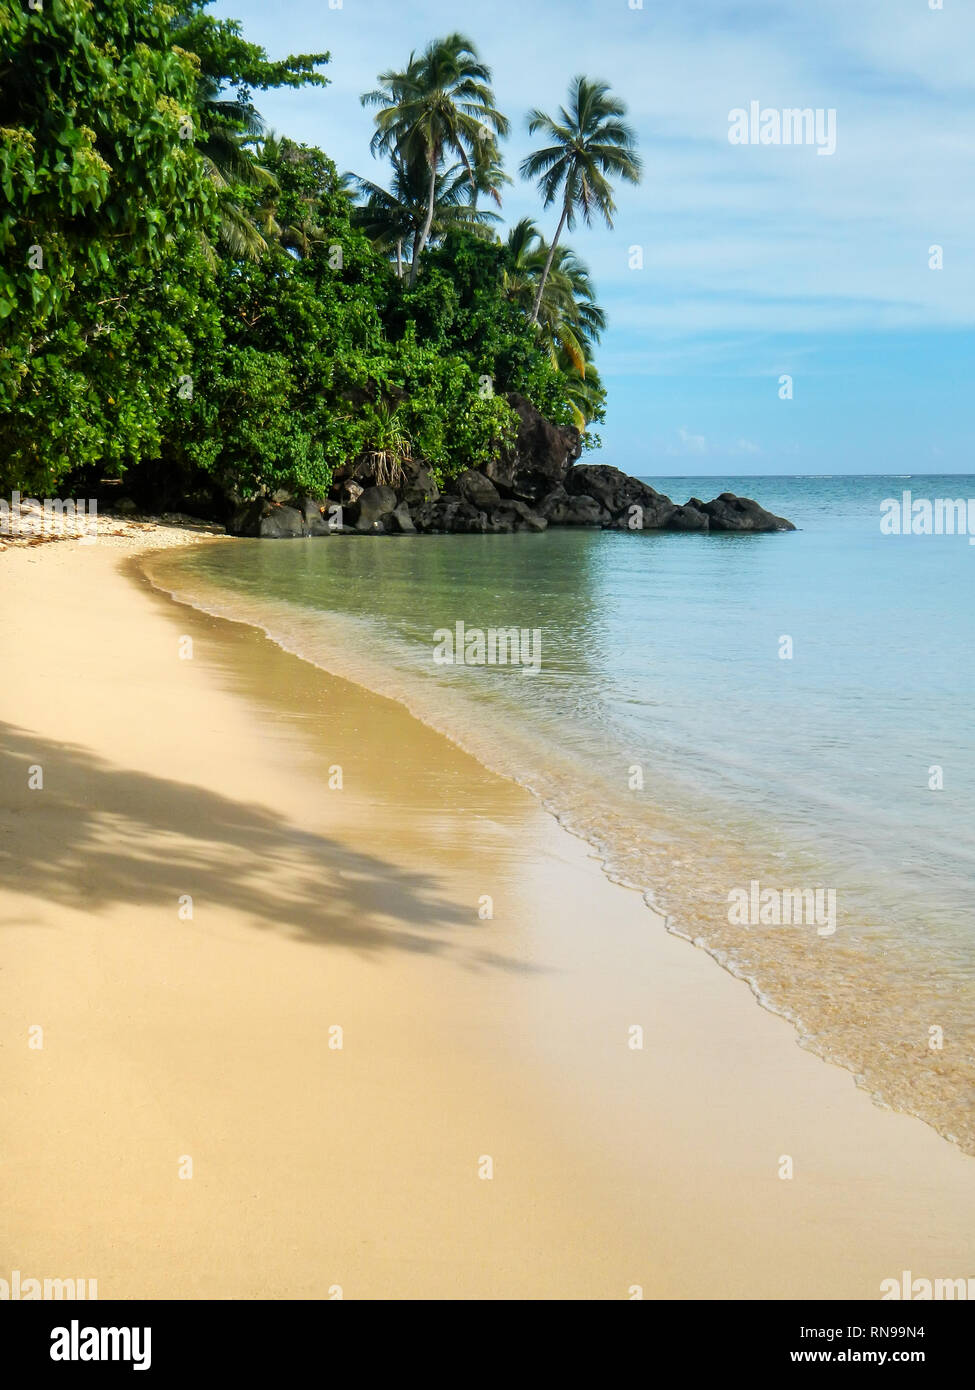 Playa de arena a lo largo de Lavena caminata costera en la Isla Taveuni, Fiji. Taveuni es la tercera isla más grande de Fiji. Foto de stock